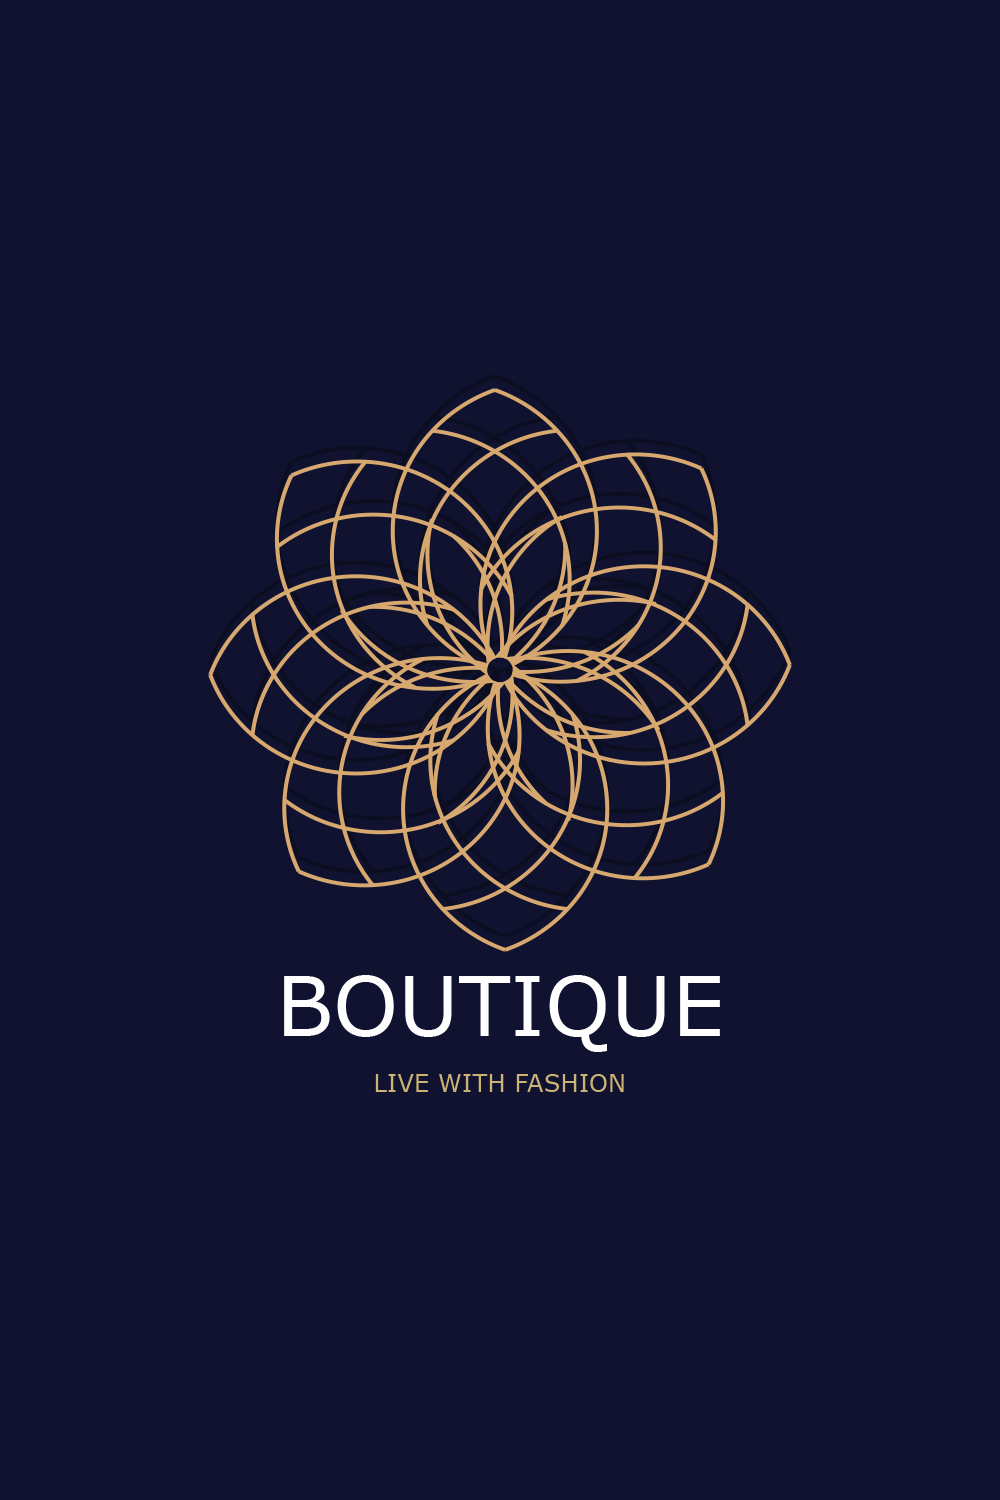 Unique and Creative Boutique Line Art Logo Design Pinterest image.